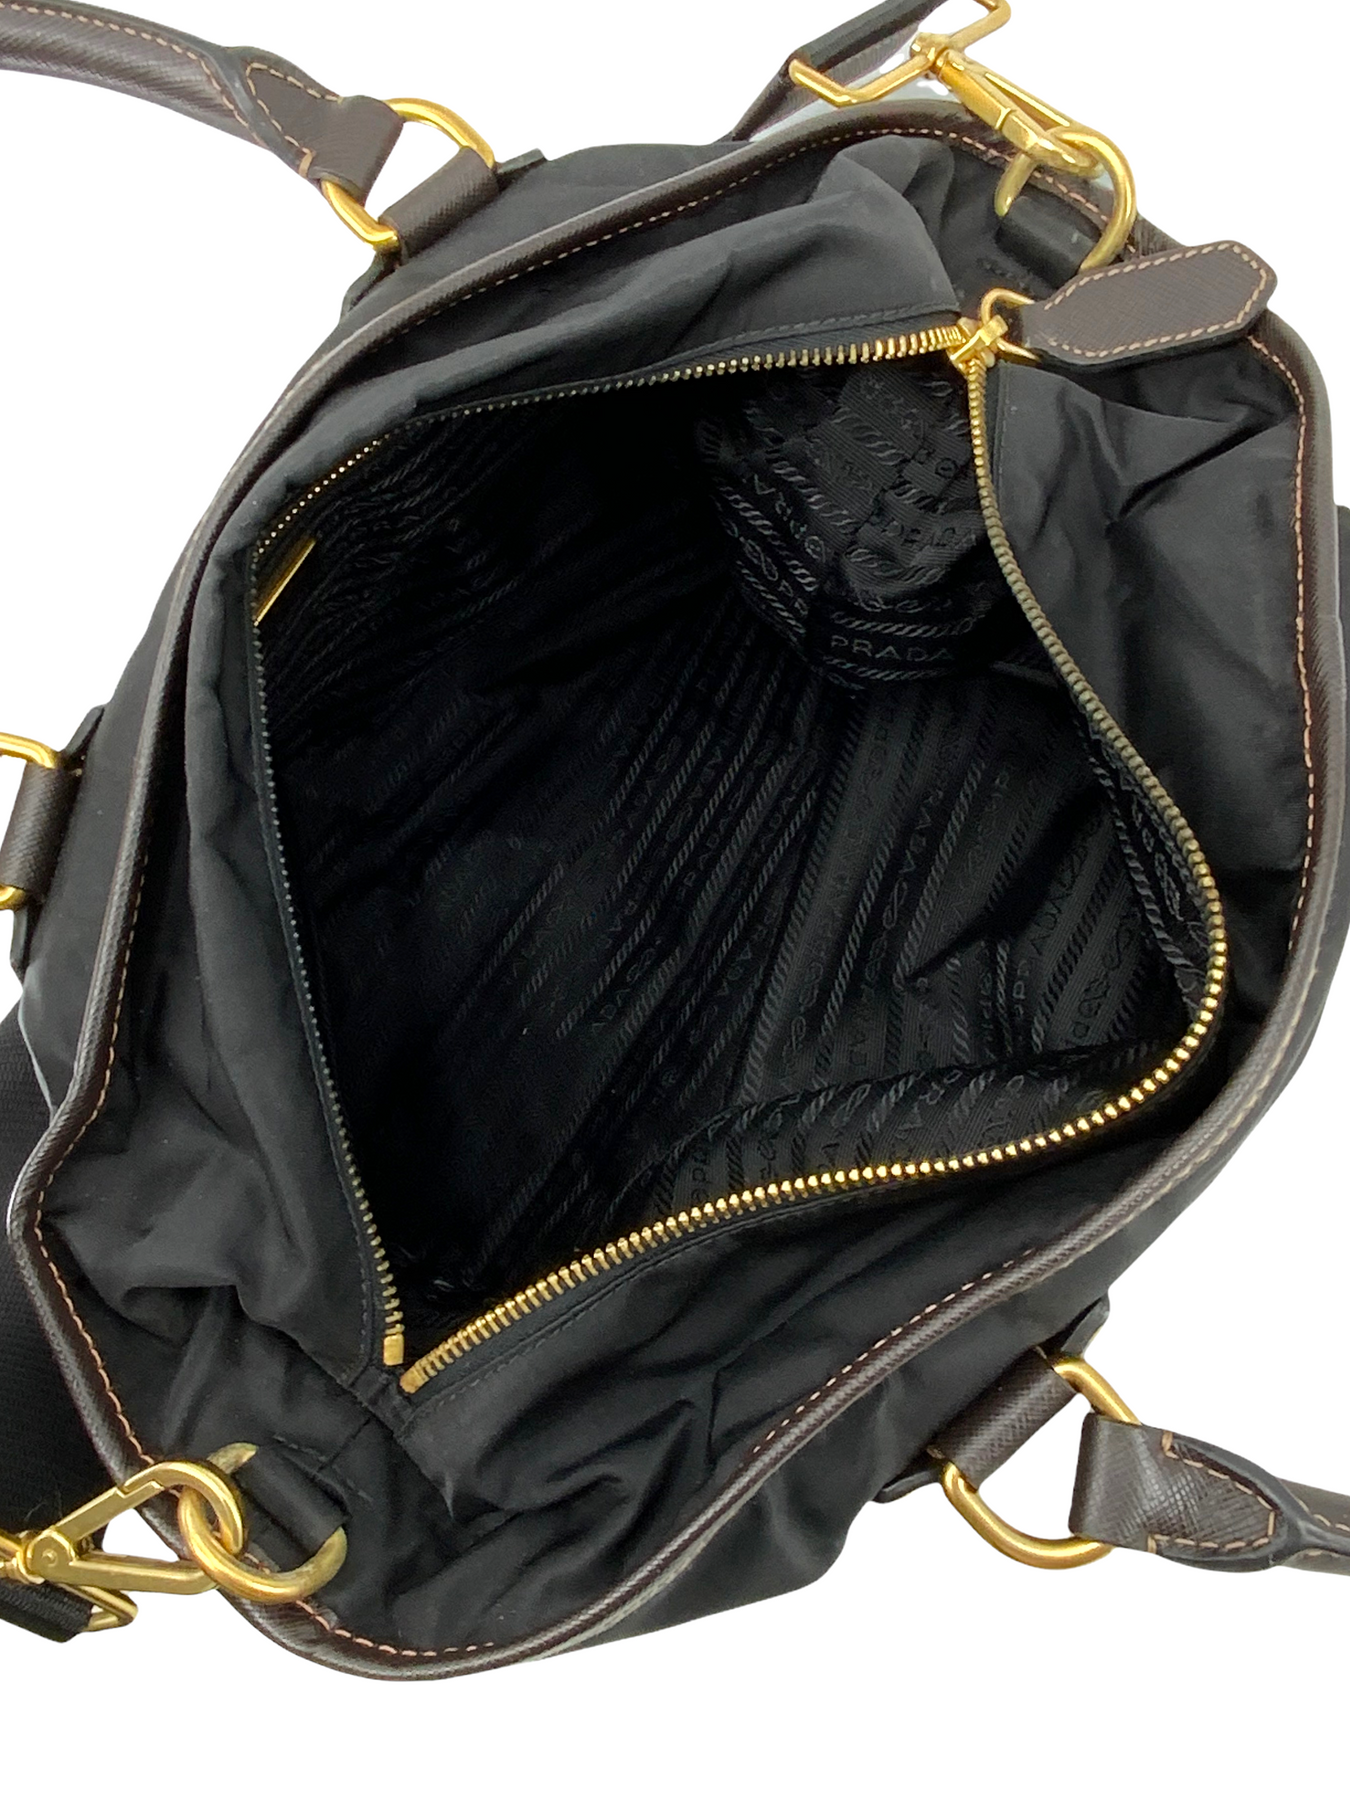  Prada Tessuto Black Nylon Leather Trim Shopping Tote